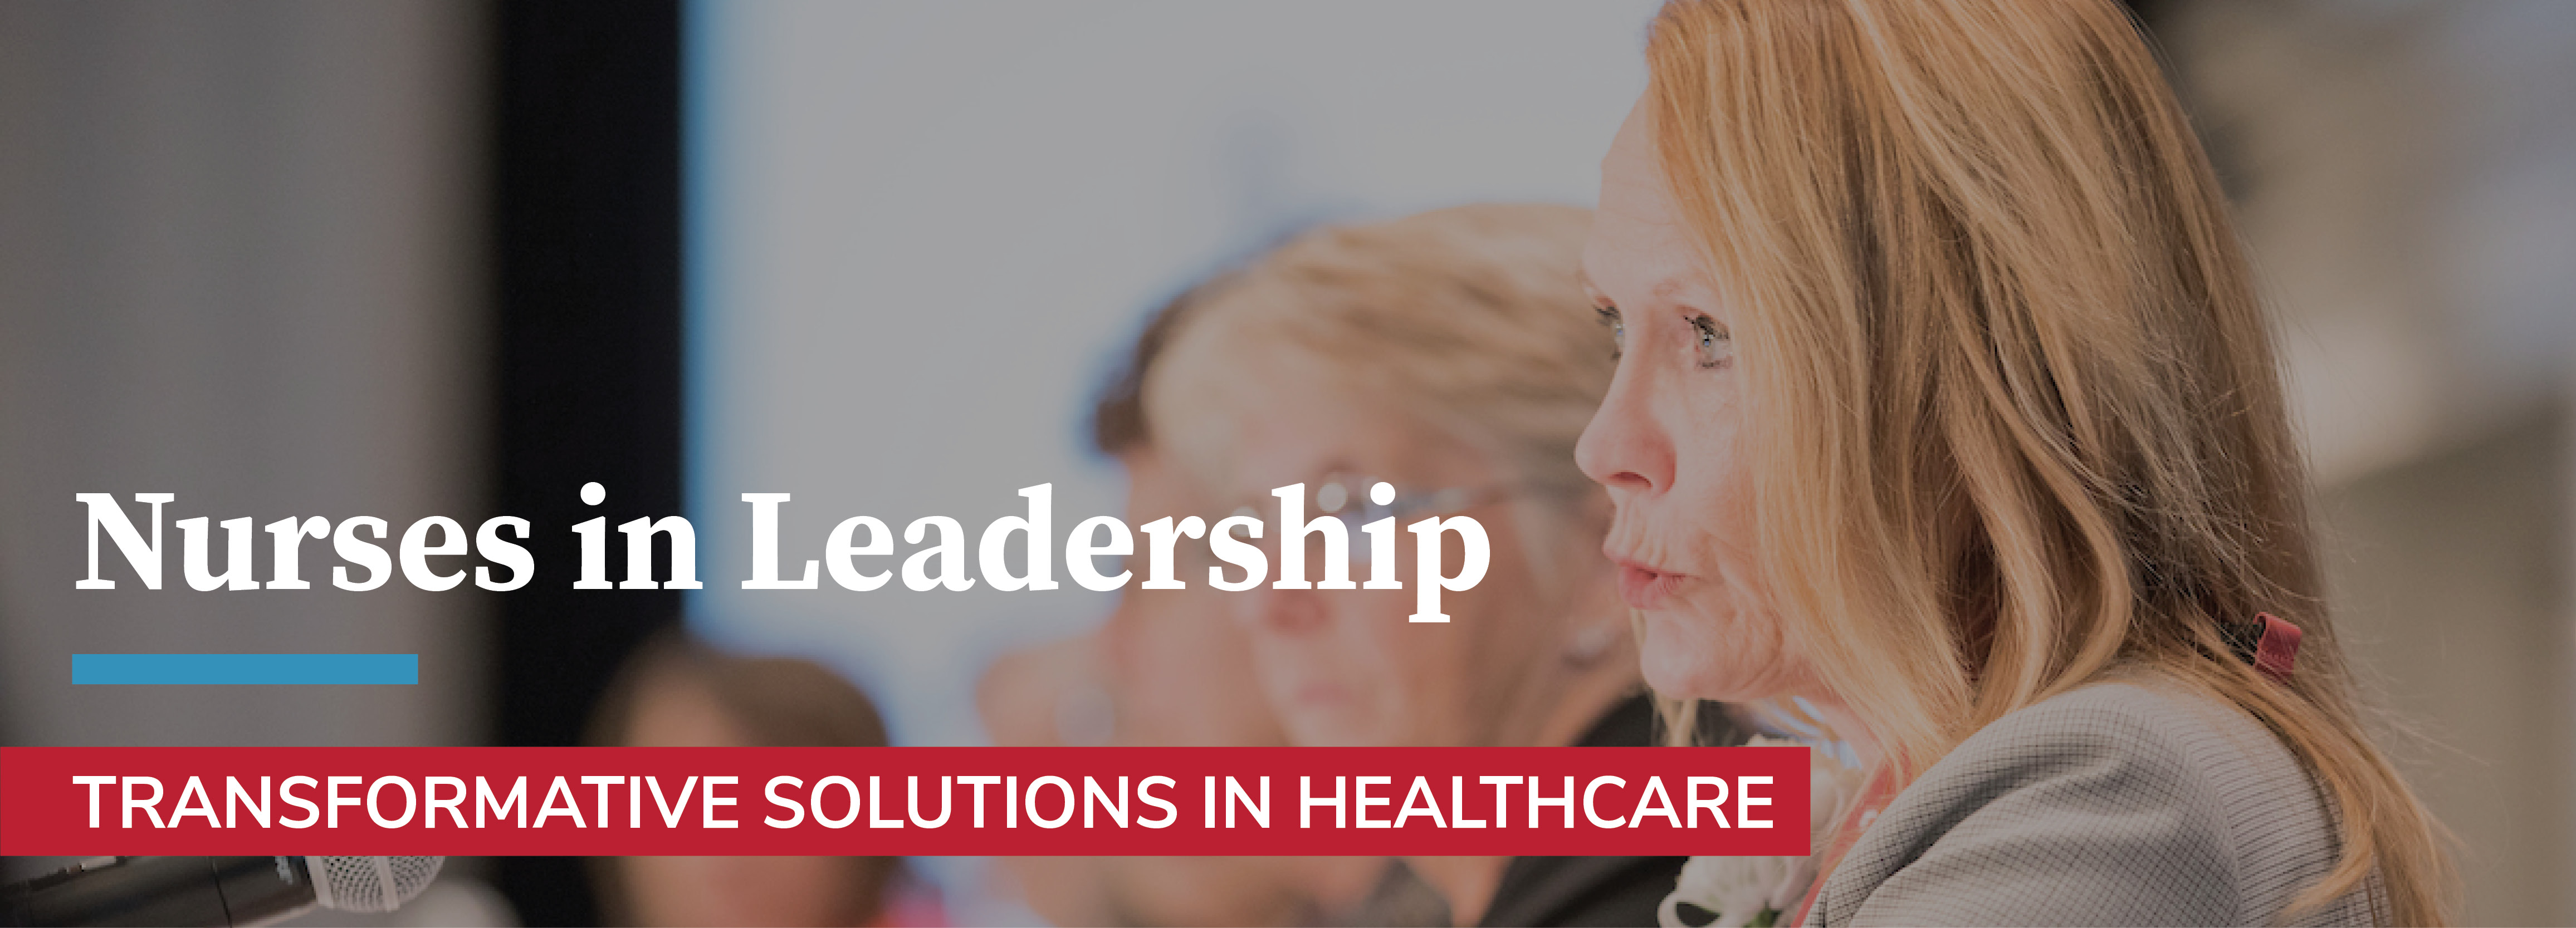 Nurses in Leadership – Transformative Solutions in Healthcare